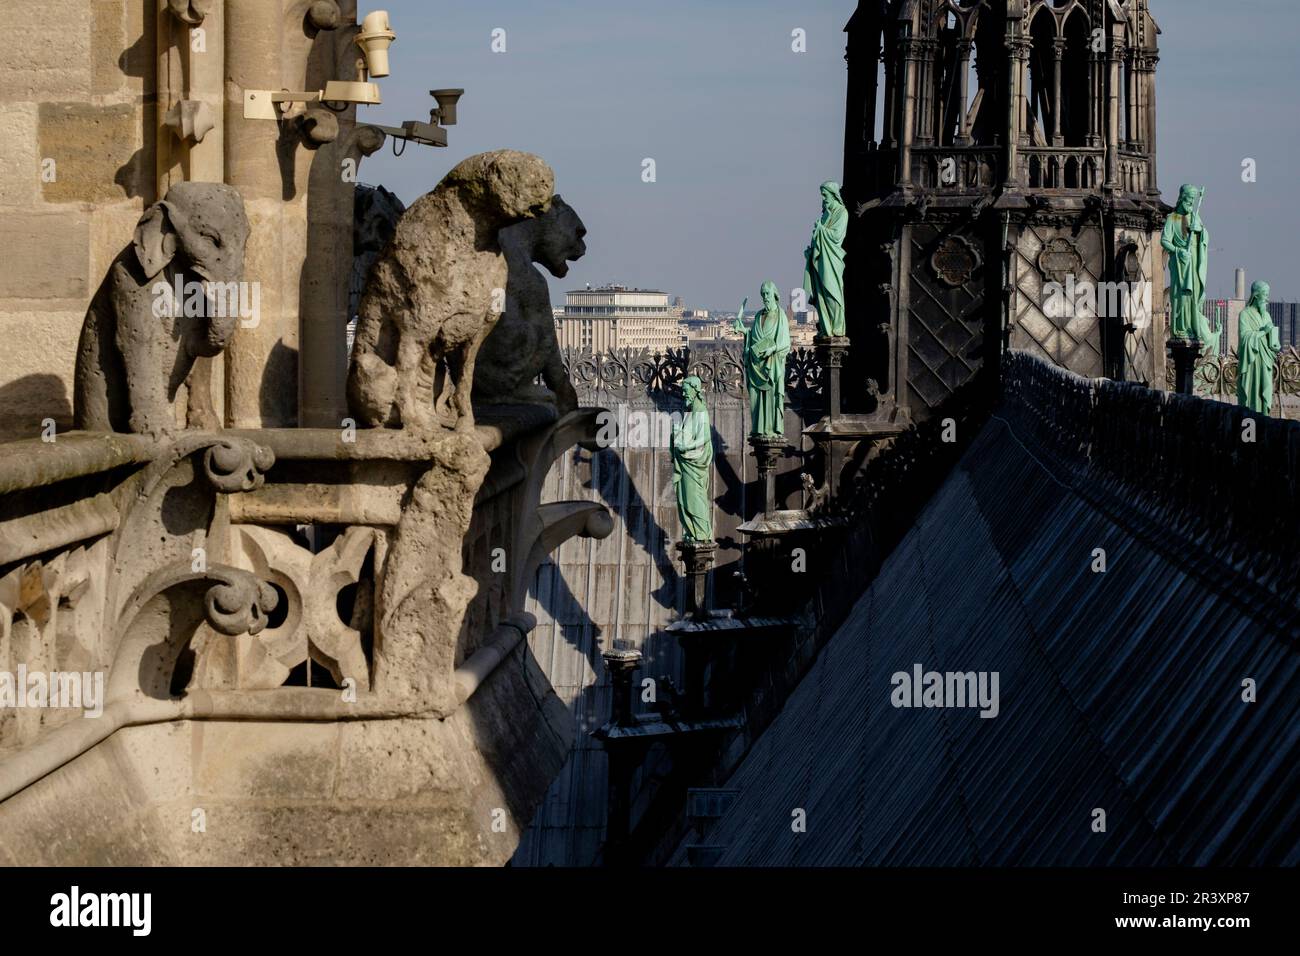 gárgolas, Cathédrale Notre Dame, sede de la archidiócesis de París, Paris, France,Western Europe. Stock Photo